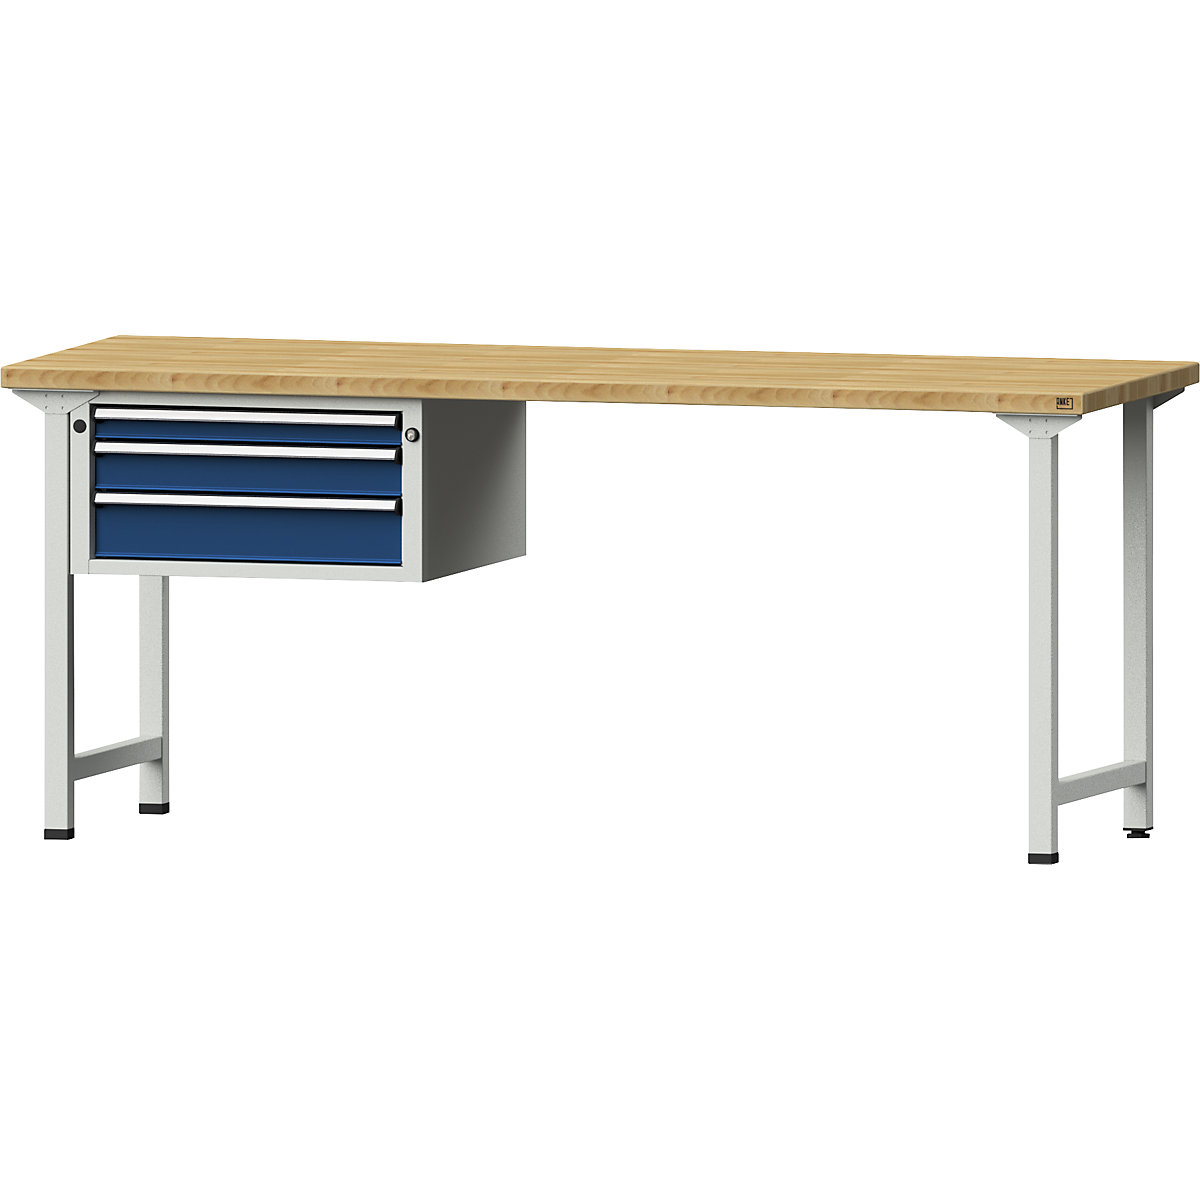 Dílenský stůl s rámovou konstrukcí – ANKE, 3 zásuvky, deska z bukového masivu, šířka 2000 mm